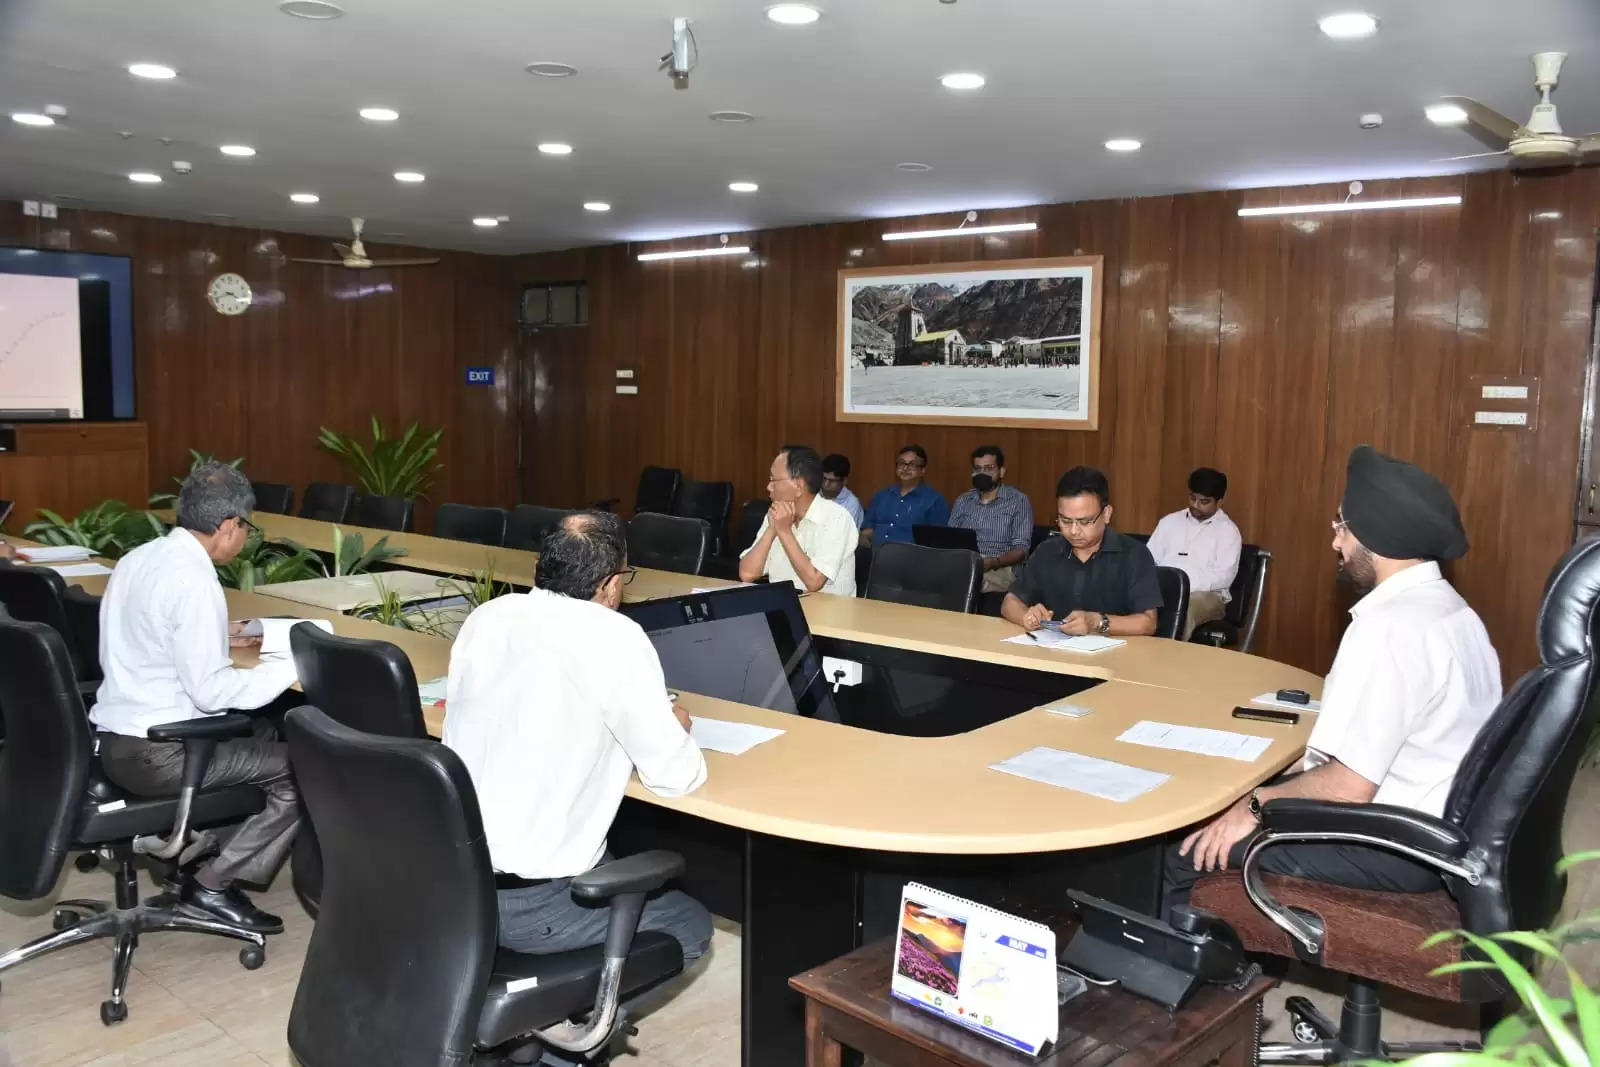 मुख्य सचिव डॉ. एस. एस. संधु ने सचिवालय में केदारनाथ पुनर्निर्माण कार्यों एवं बद्रीनाथ धाम मास्टर प्लान की समीक्षा की